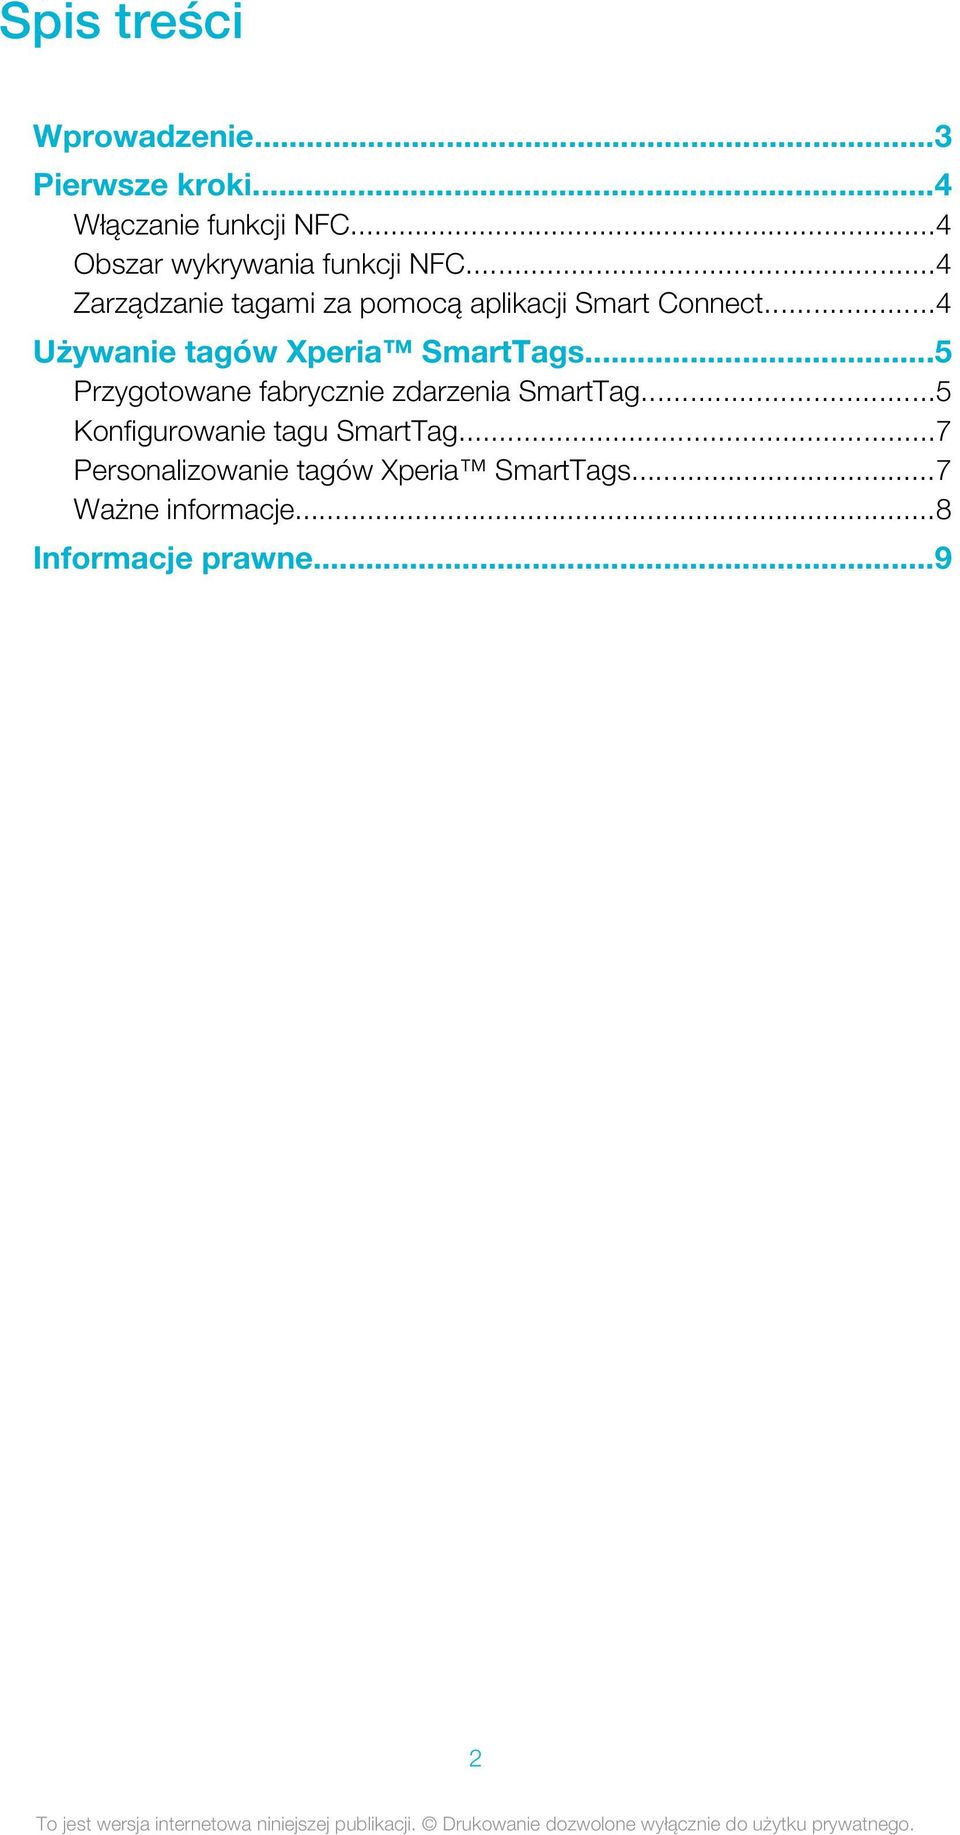 ..4 Używanie tagów Xperia SmartTags...5 Przygotowane fabrycznie zdarzenia SmartTag.